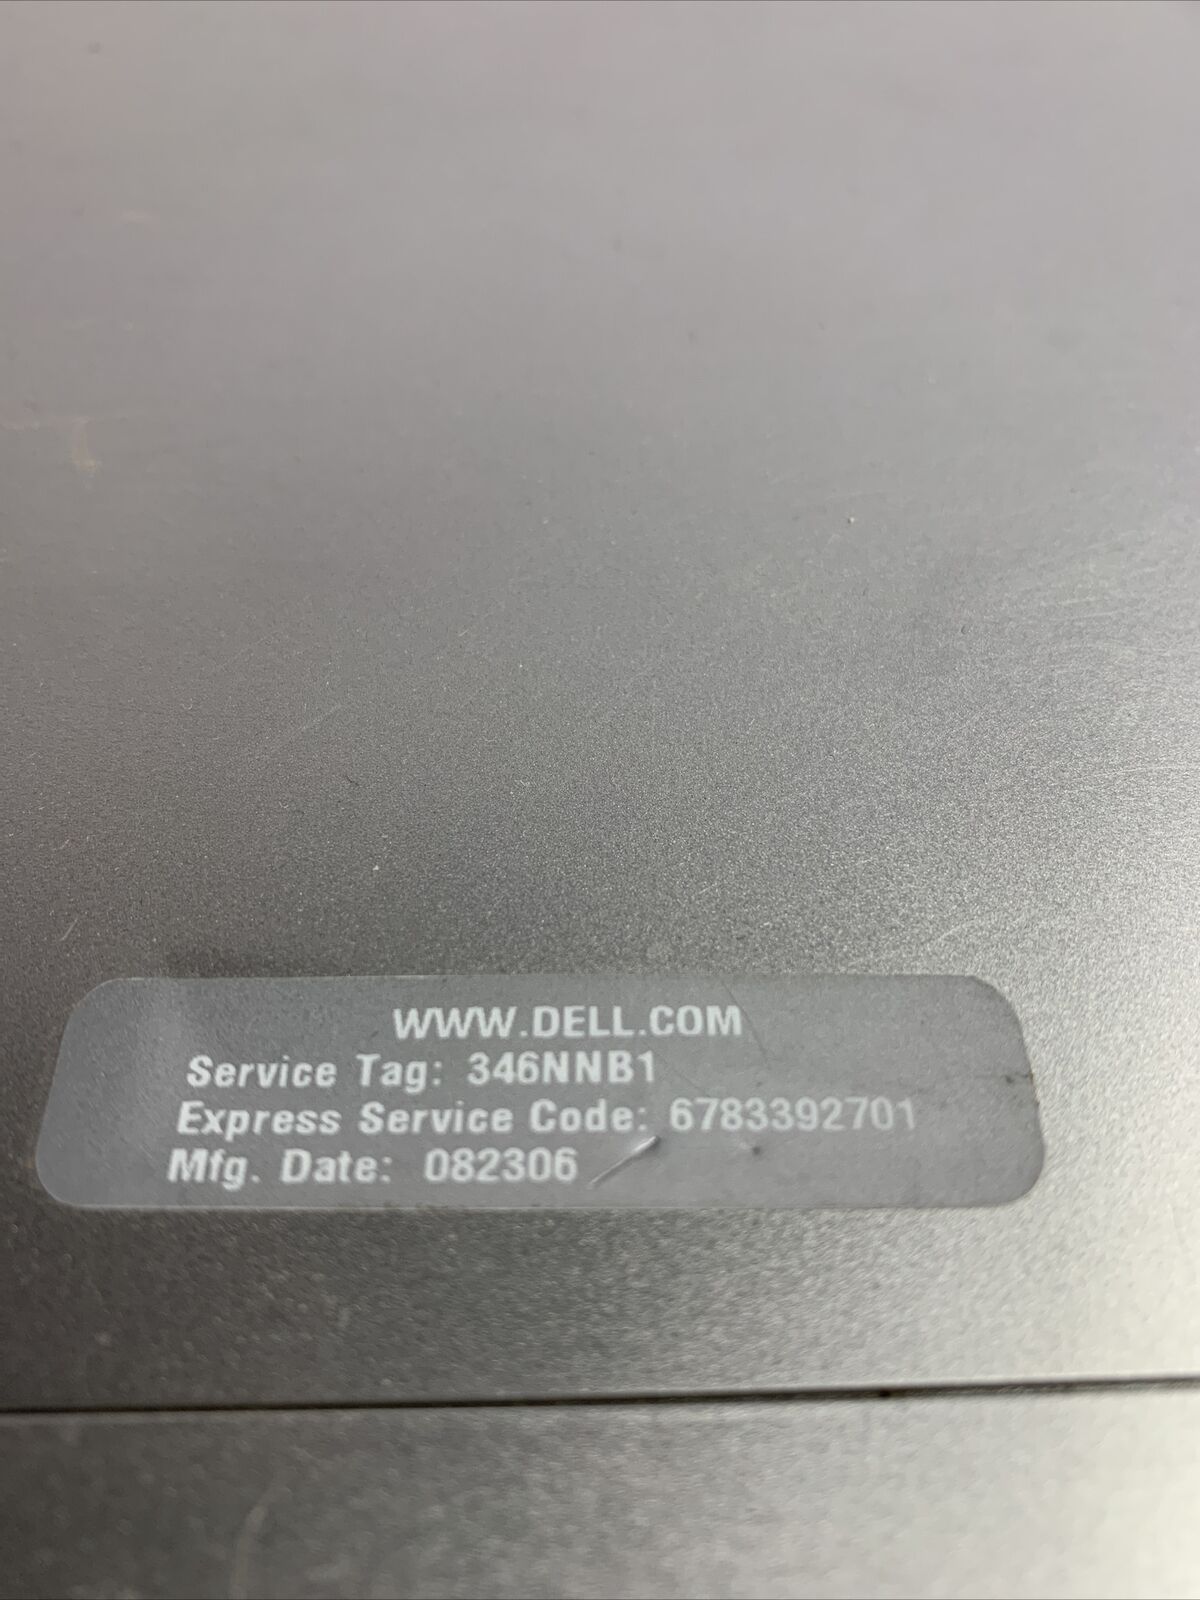 Dell XPS 400 MT Intel Pentium D 2.8GHz 4GB RAM No HDD No OS